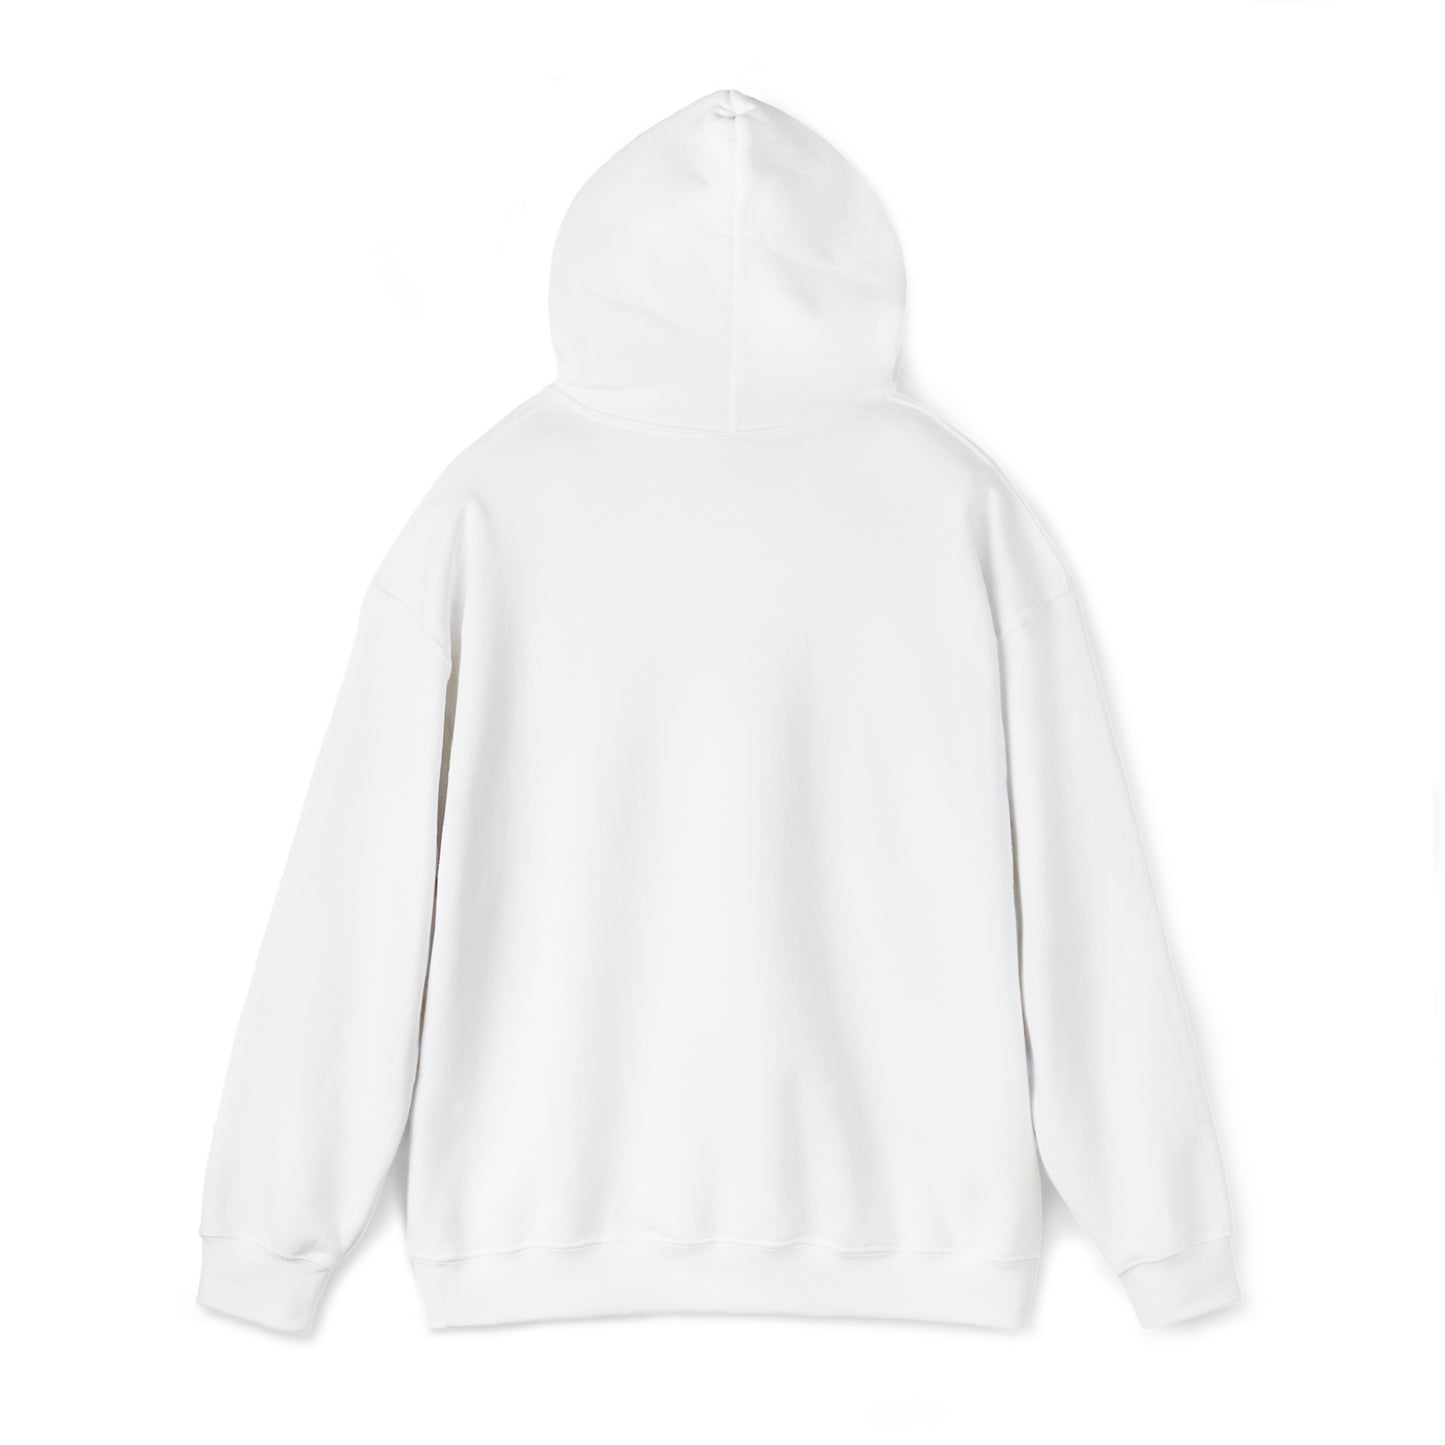 Unisex Heavy Blend™ Hooded Sweatshirt:  Psalms 103:12